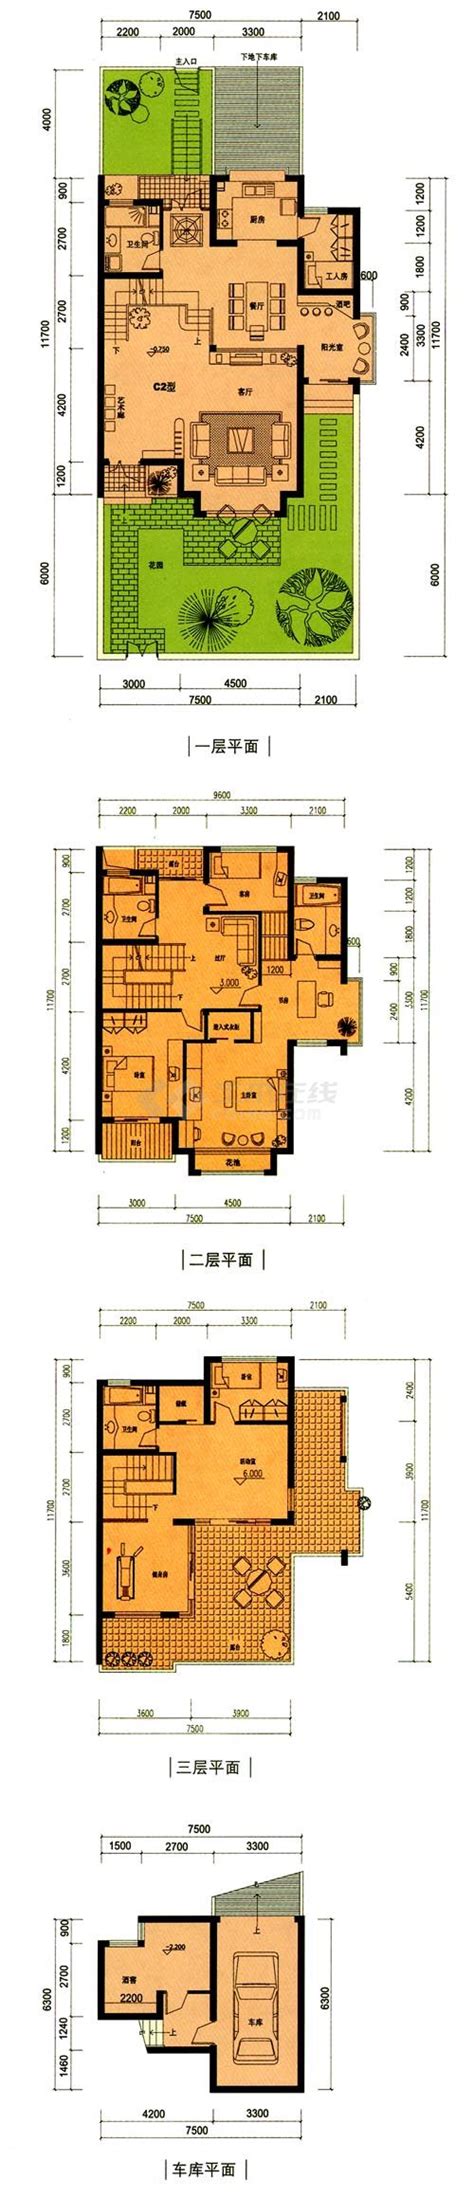 普陀区祥和尊邸230平欧式风格五室三厅装修效果图-精选案例 - 上海好的装修公司统帅装饰